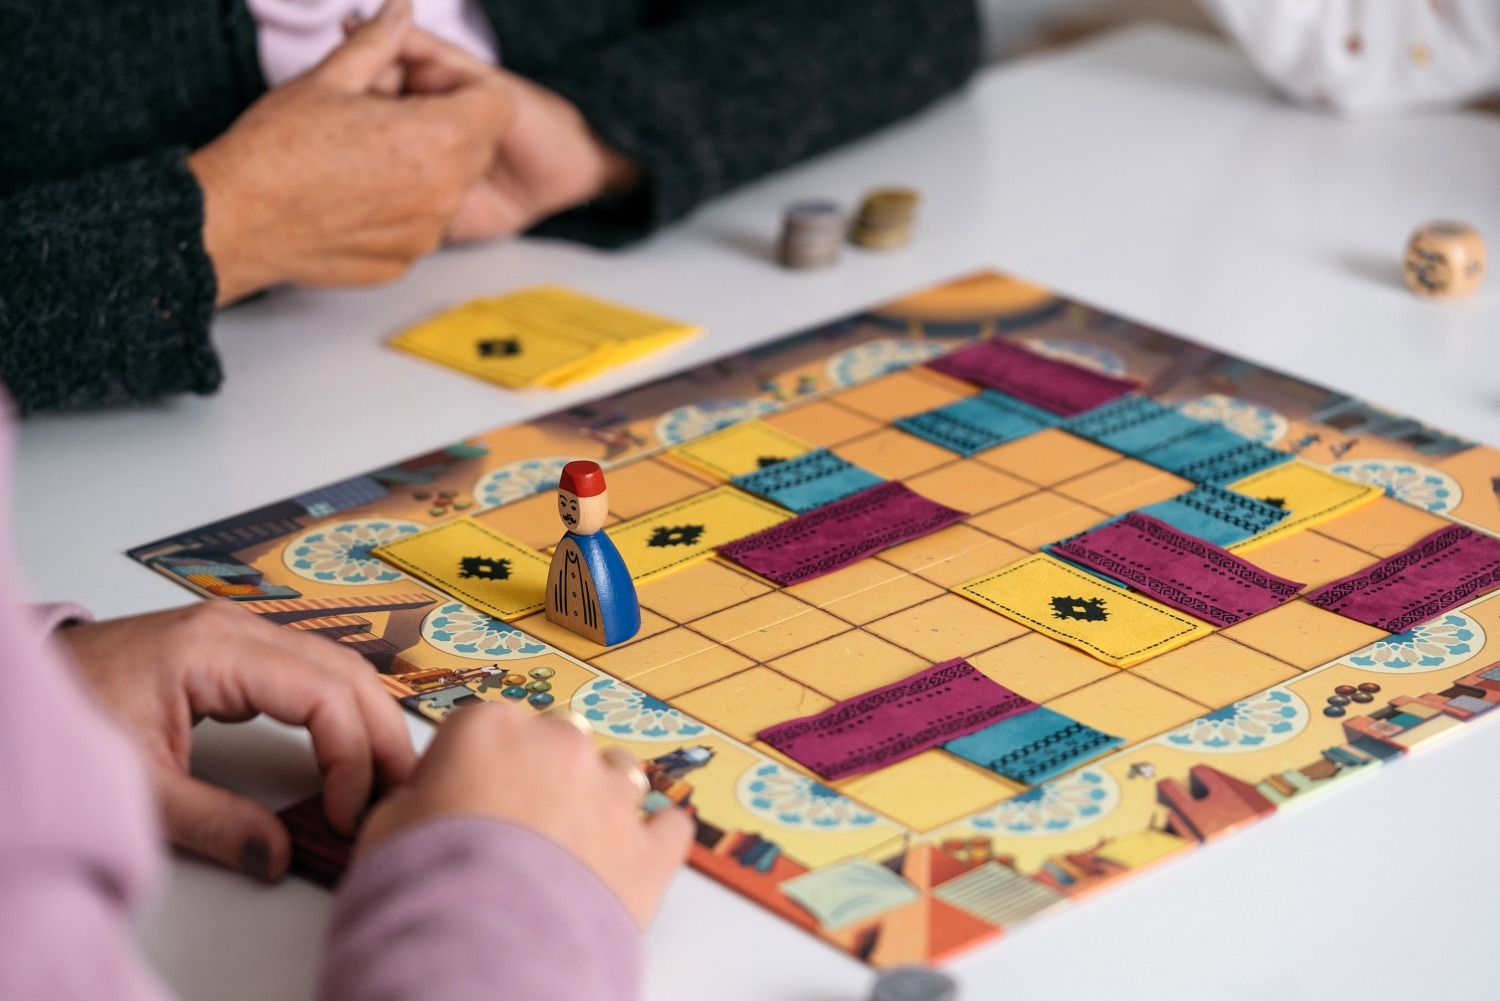 Marrakech gigamic jeu de société boardgame